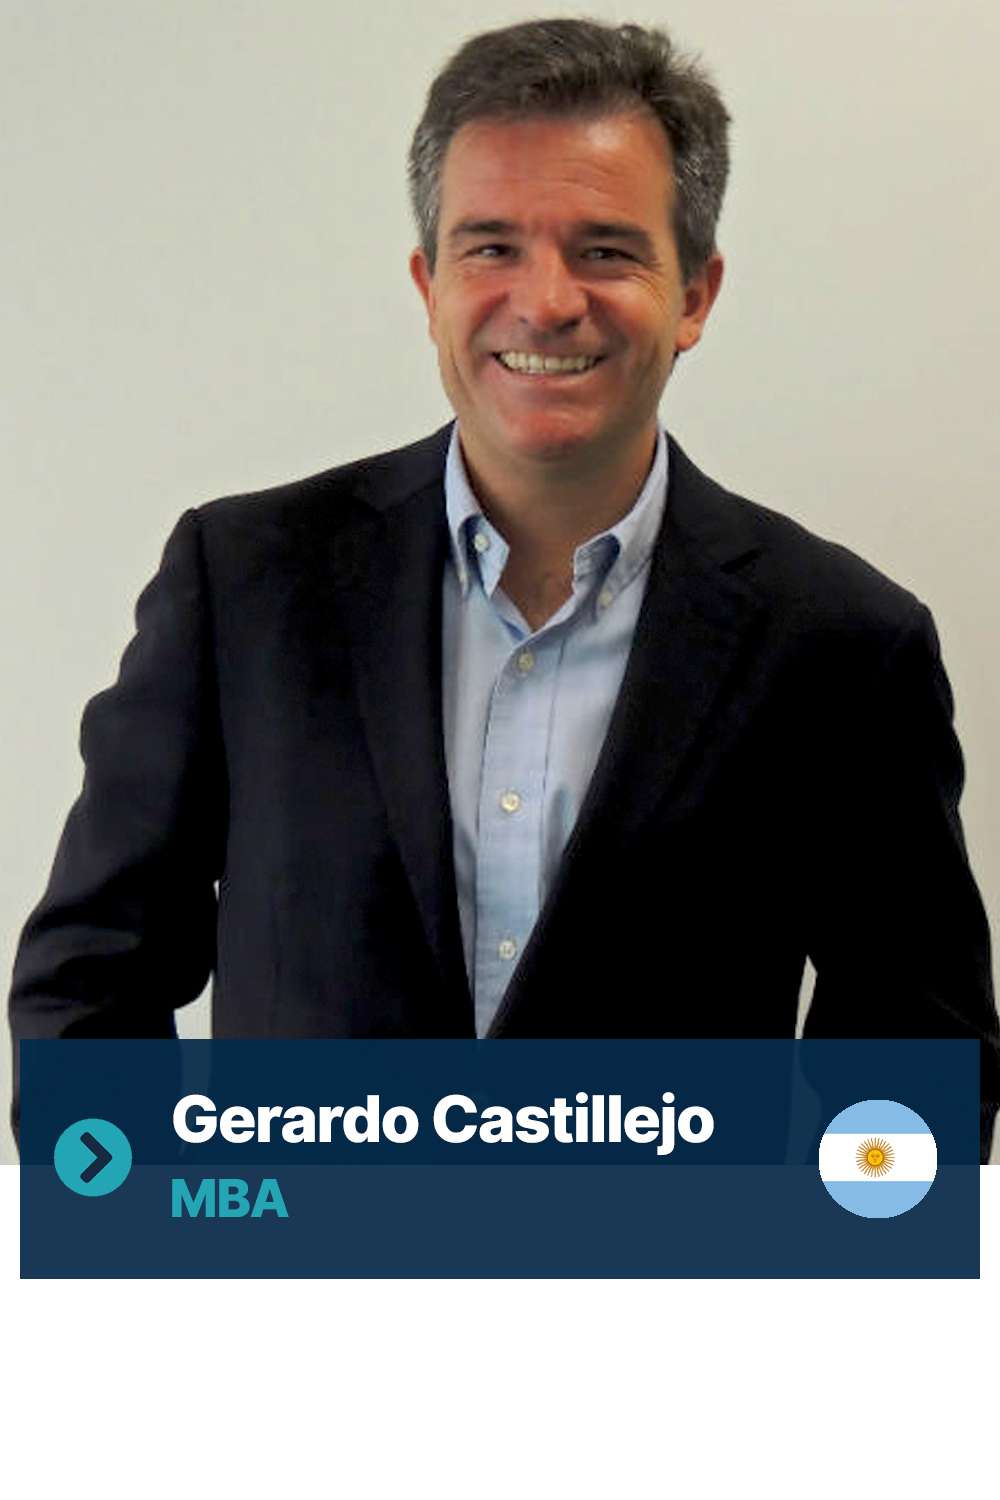 Gerardo Castillejo